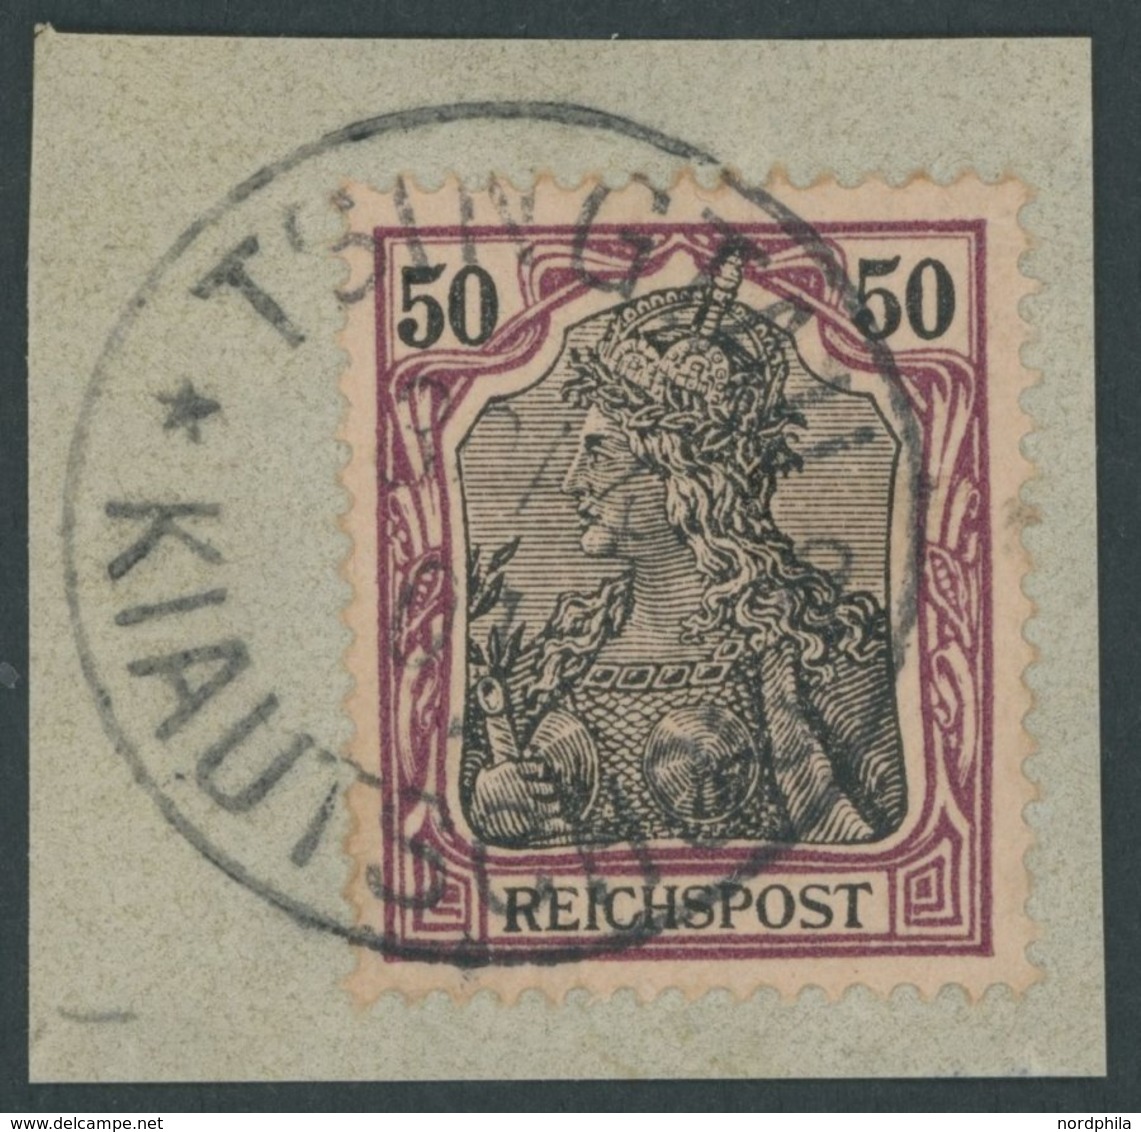 DP CHINA P Vg BrfStk, Petschili: 1900, 50 Pf. Reichspost, Stempel TSINGTAU KIAUTSCHOU *a, Prachtbriefstück, Gepr. Steuer - Deutsche Post In China